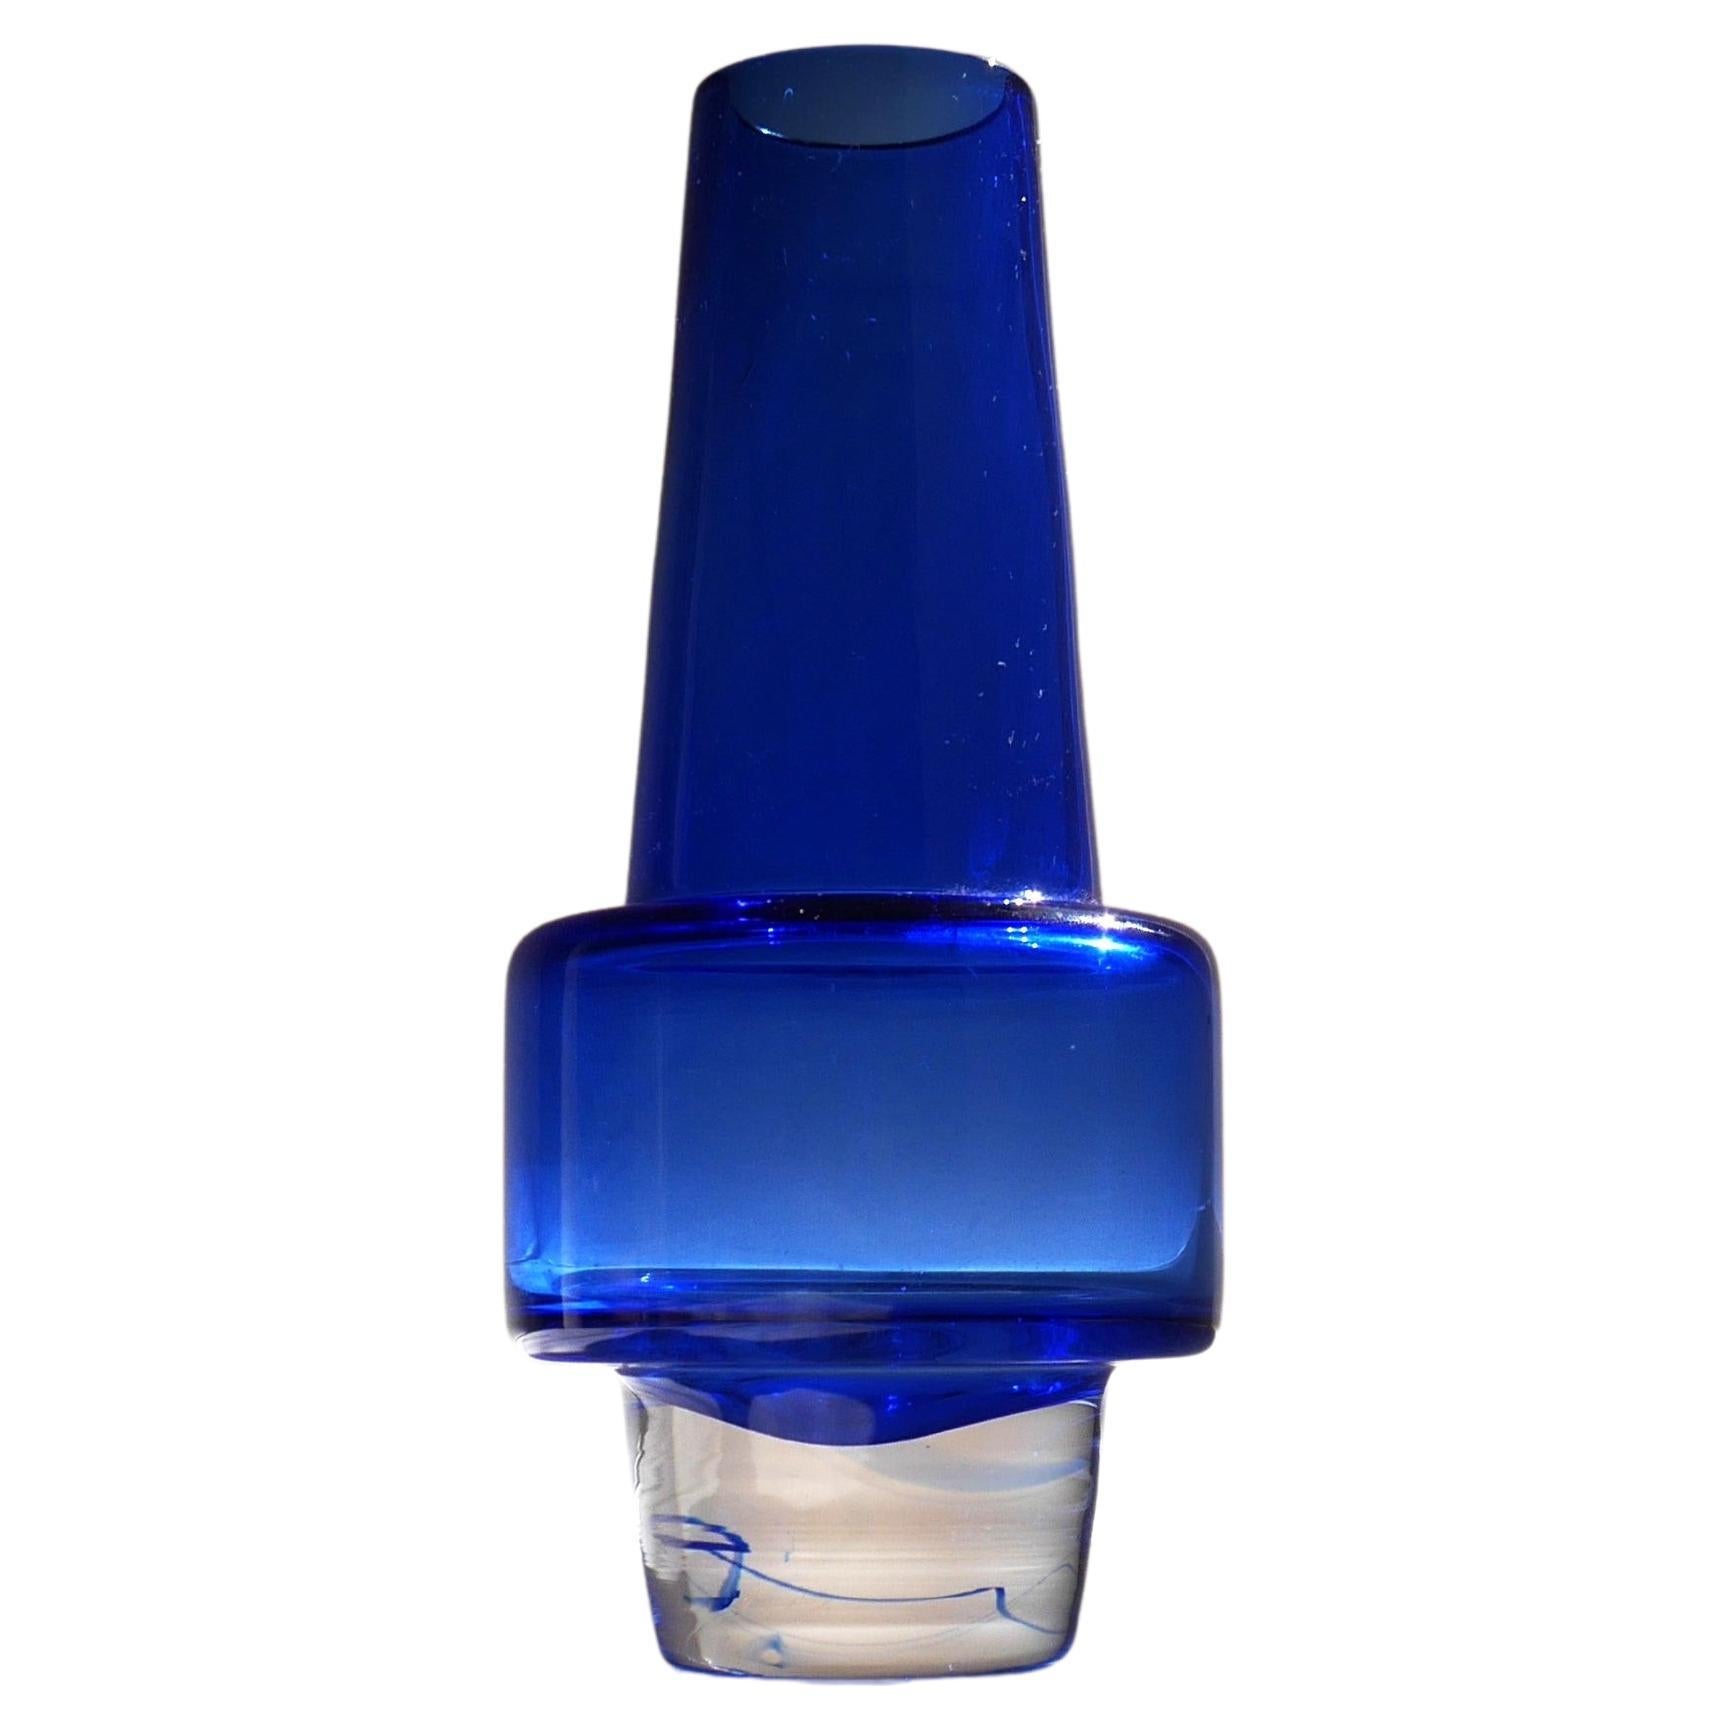 An Indigo Blue 'Rocket' Vase by Inge Samuelsson, Sea Glassbruk For Sale